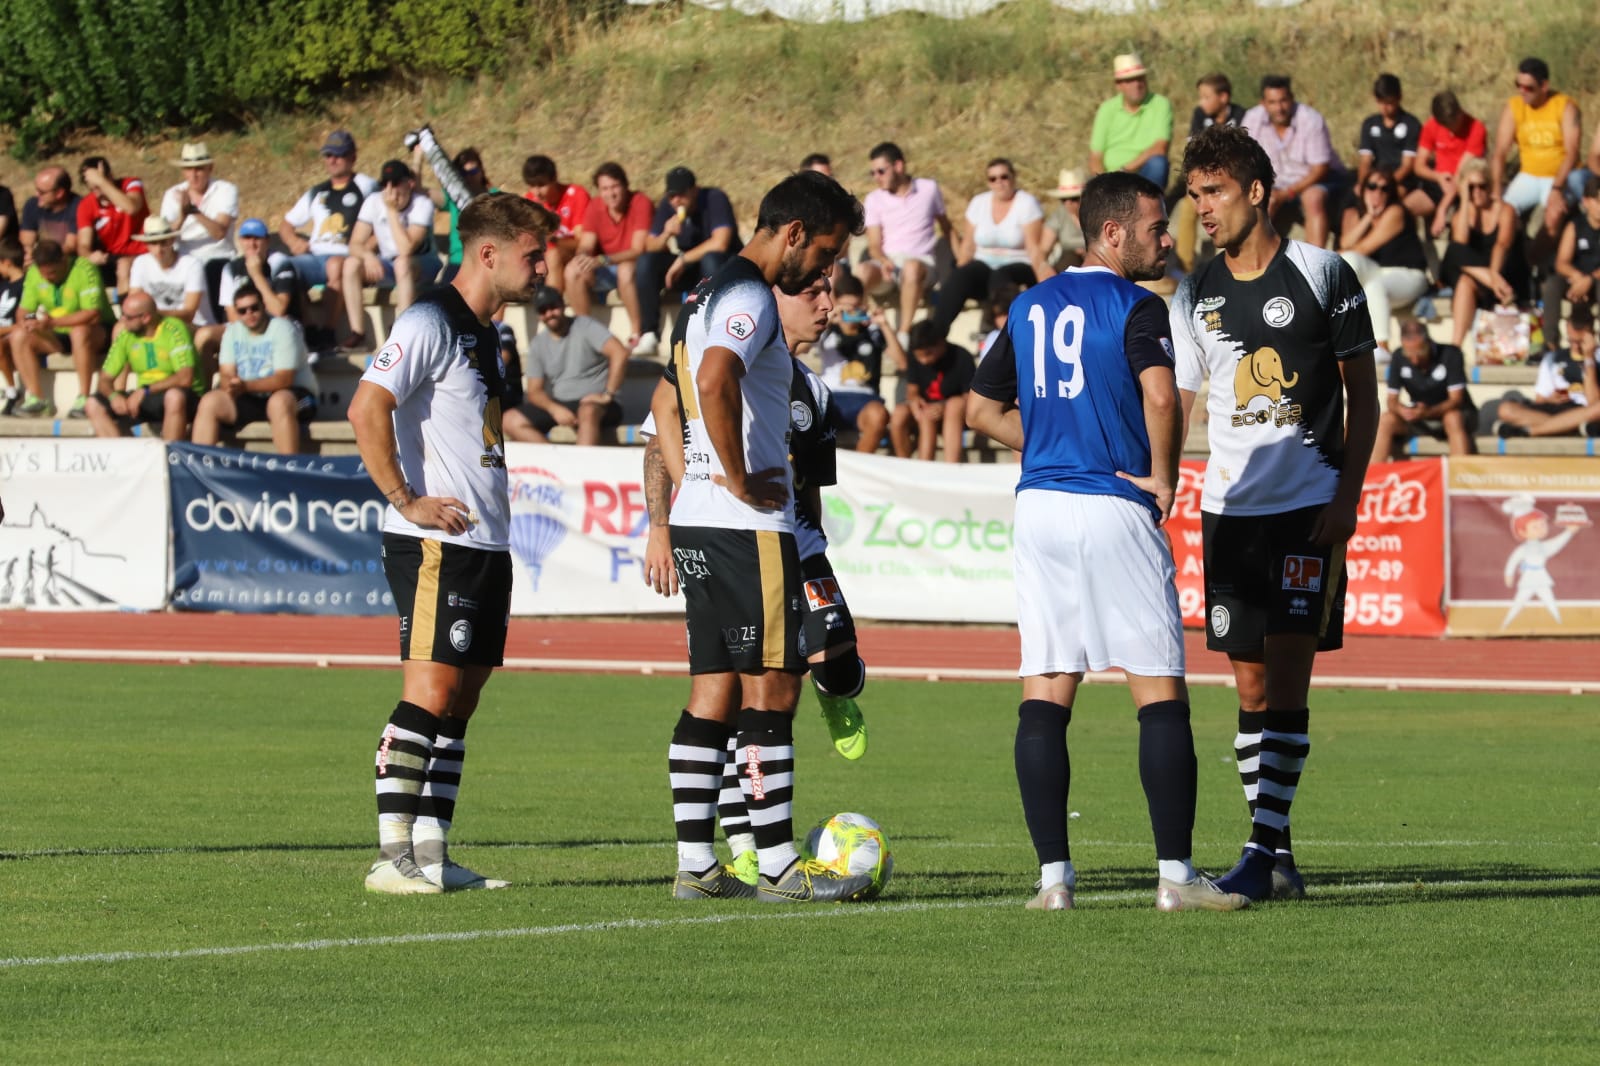 El Mérida, con dos exunionistas en sus filas, Cristo Medina y Diego del Castillo, ha sido el rival elegido para cerrar la pretemporada en Salamanca por parte del Unionista, en un partido con goles y que ha servido para afinar la puesta a punto del equipo charro. 